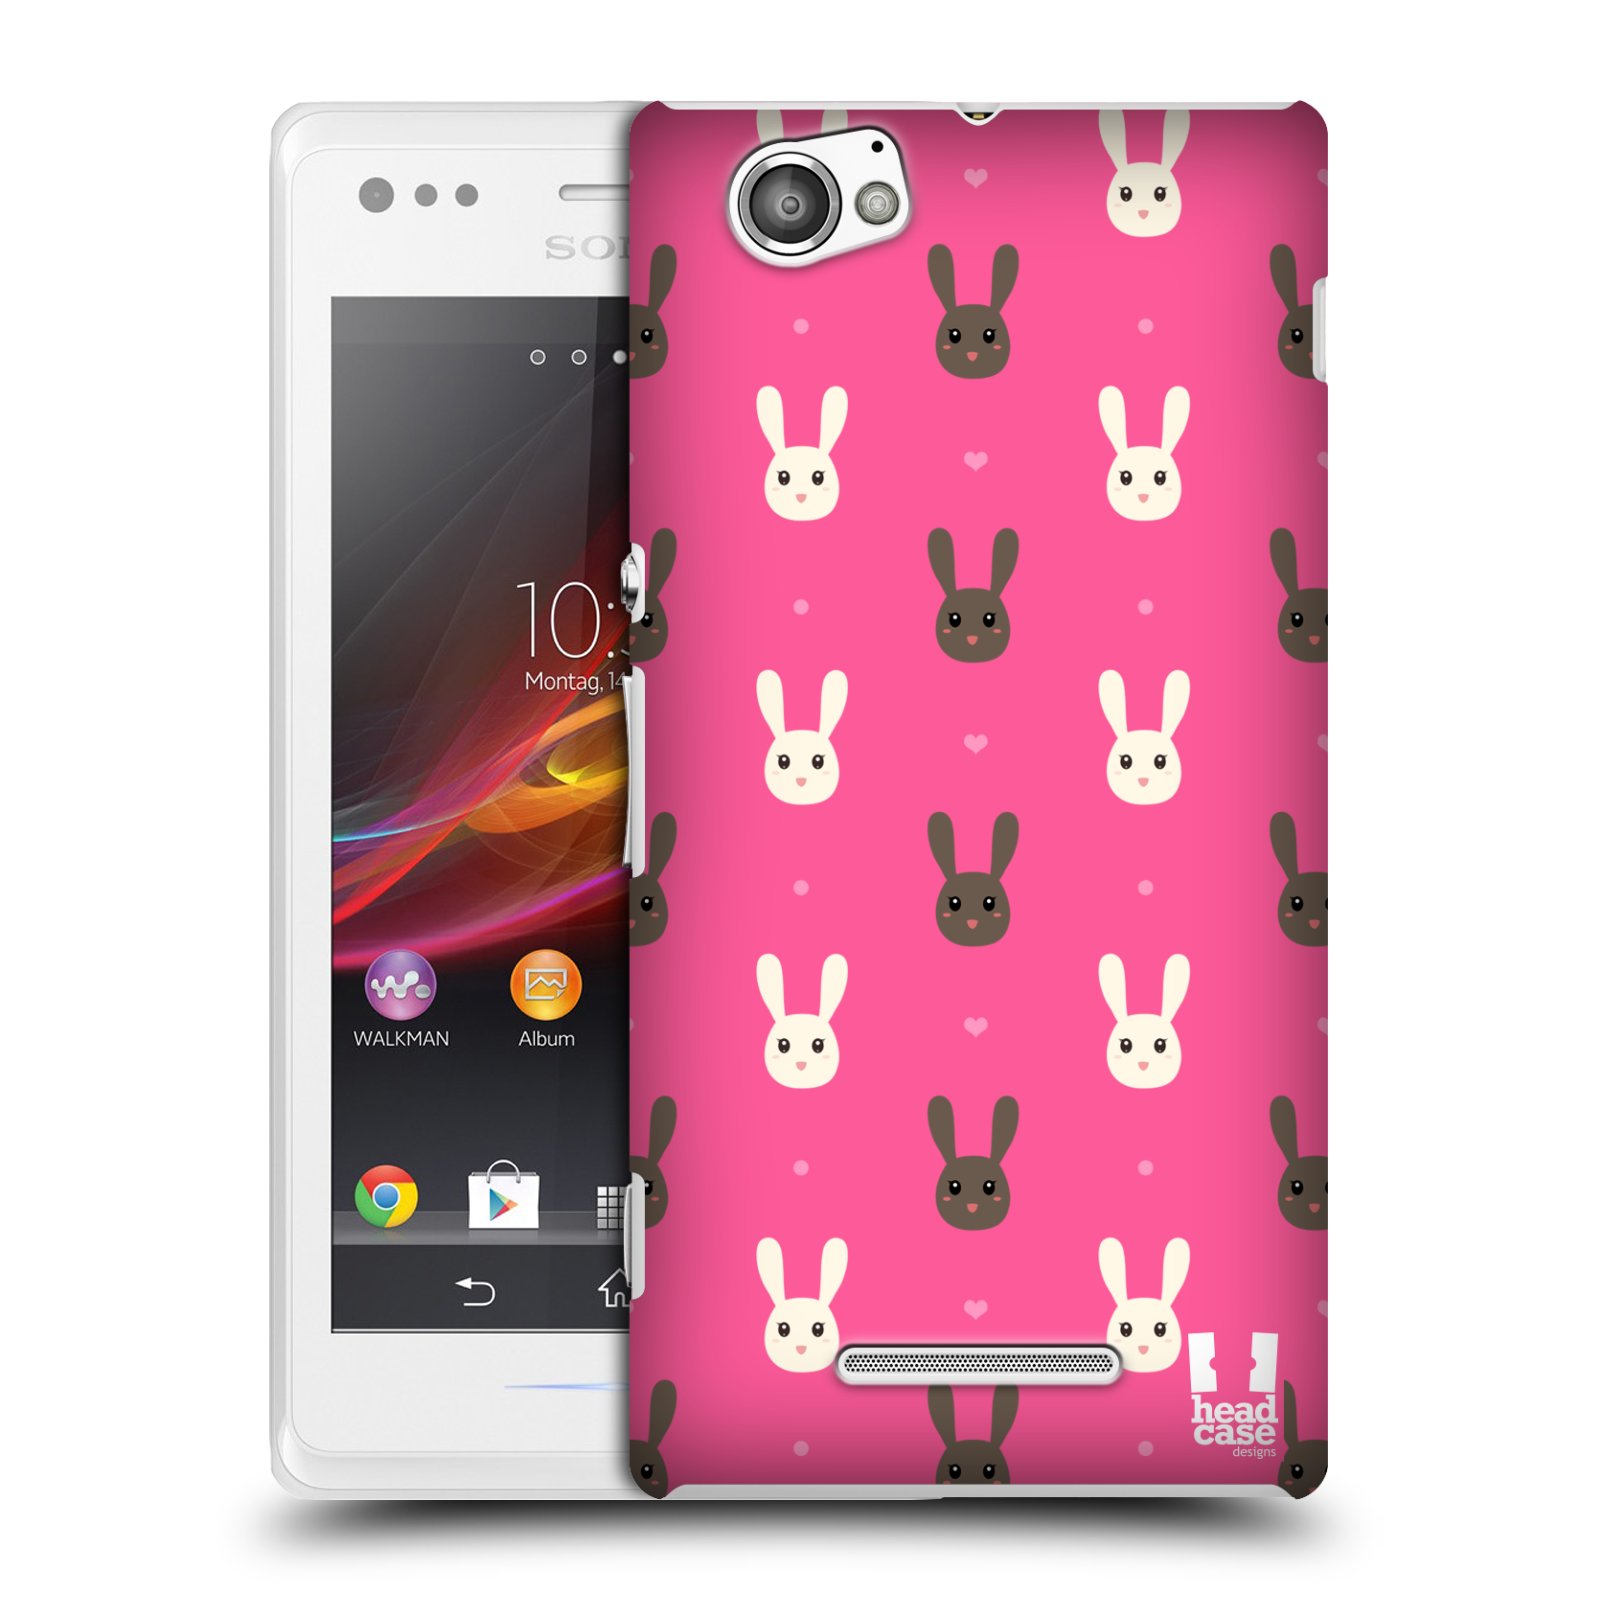 HEAD CASE plastový obal na mobil Sony Xperia M vzor Barevní zajíčci RŮŽOVÁ hnědý a bílý králíček